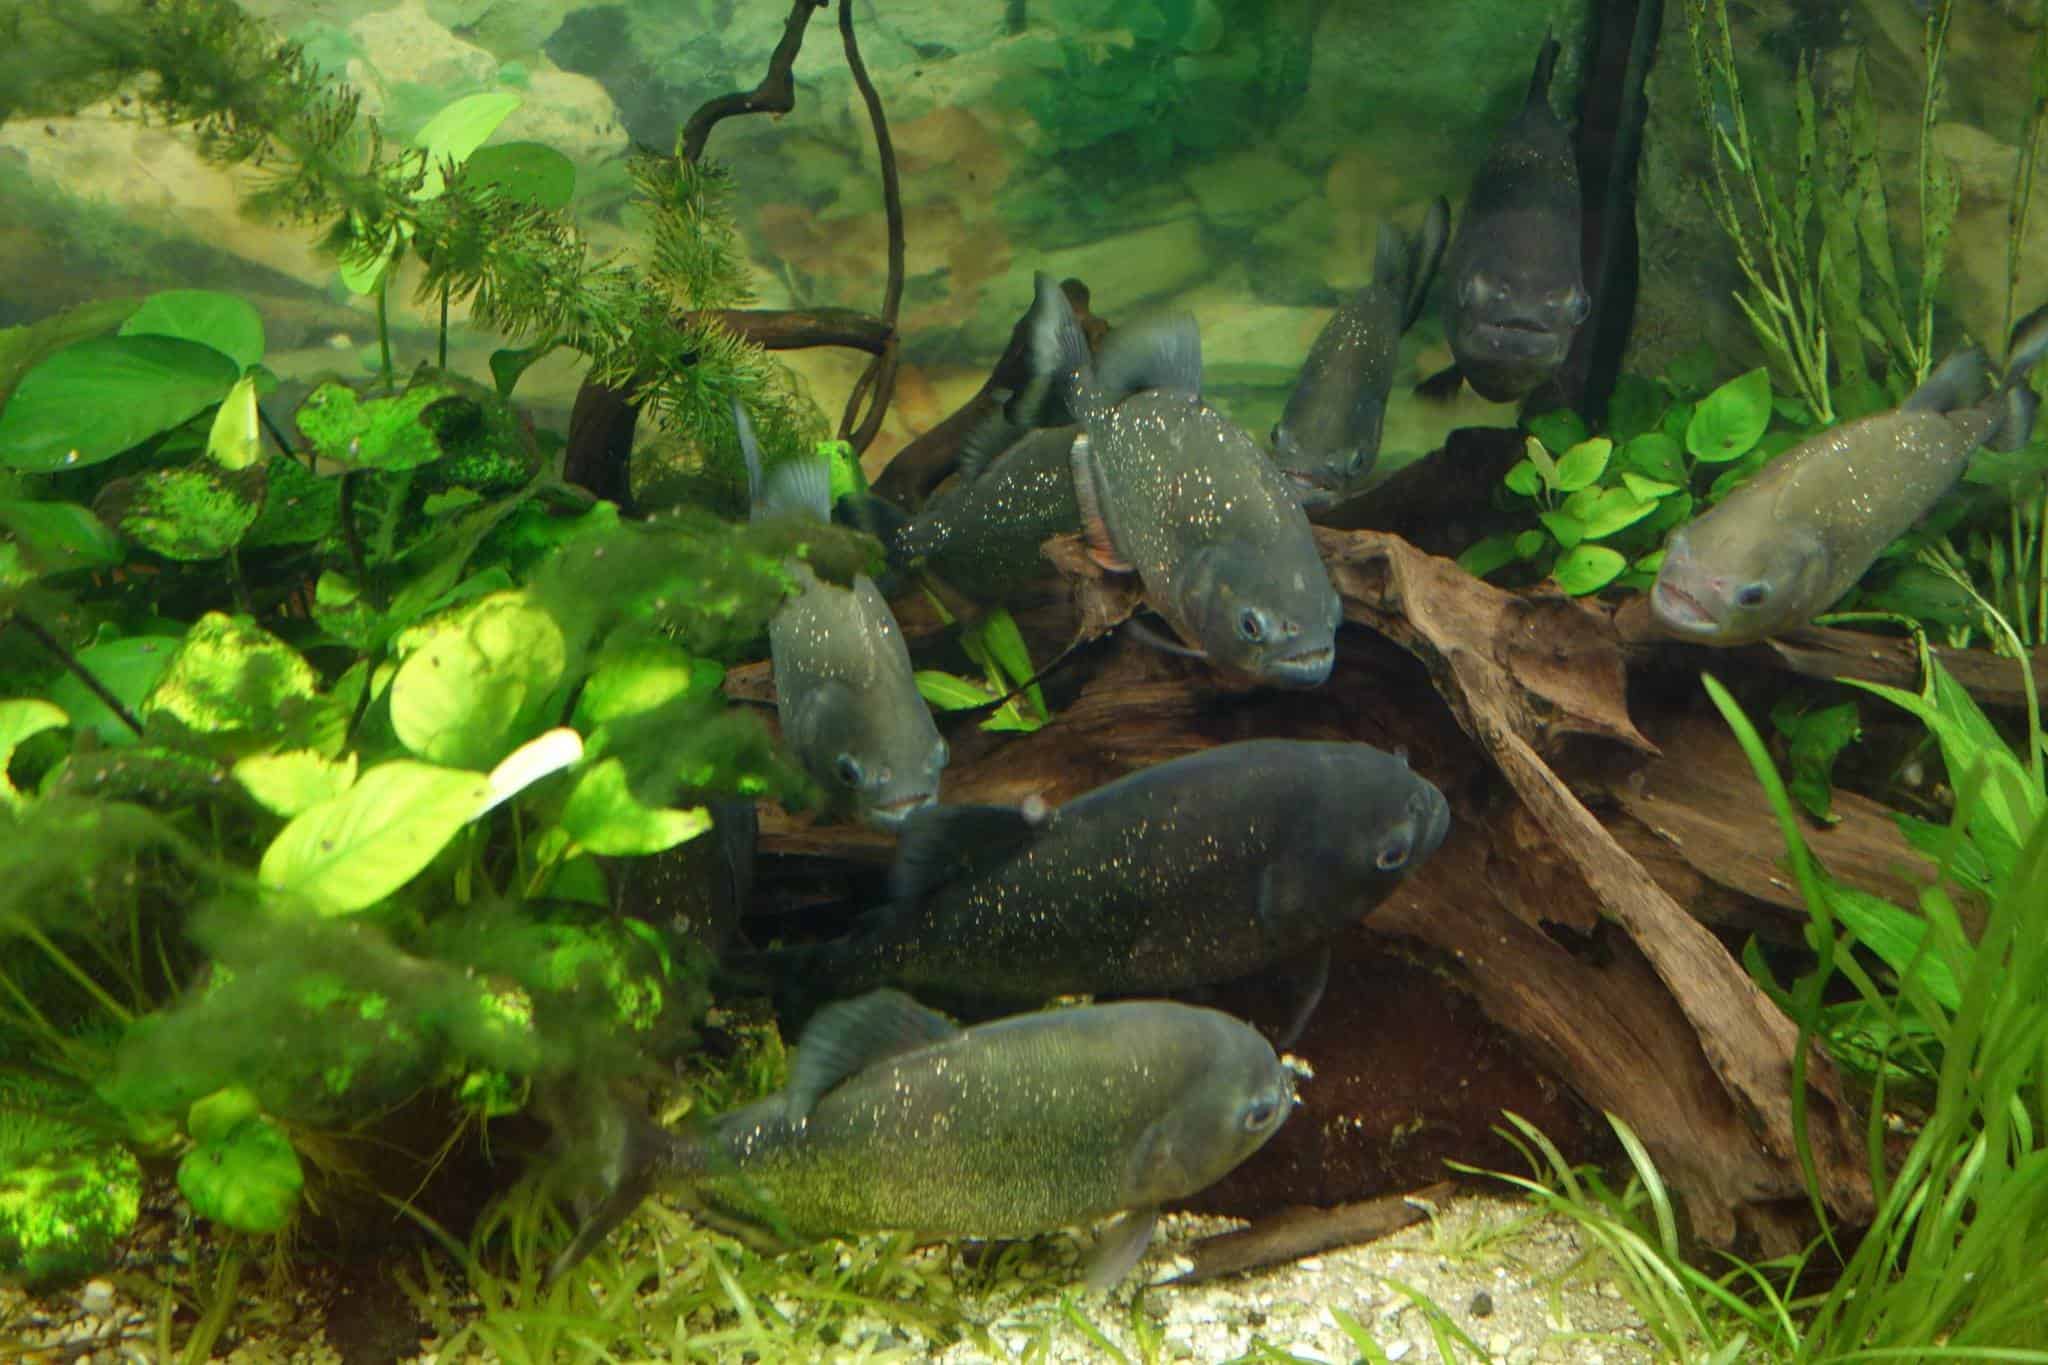 Piranhas-Aquarium im Reptilienzoo Happ - Sehenswürdigkeiten in Klagenfurt am Wörthersee, Österreich